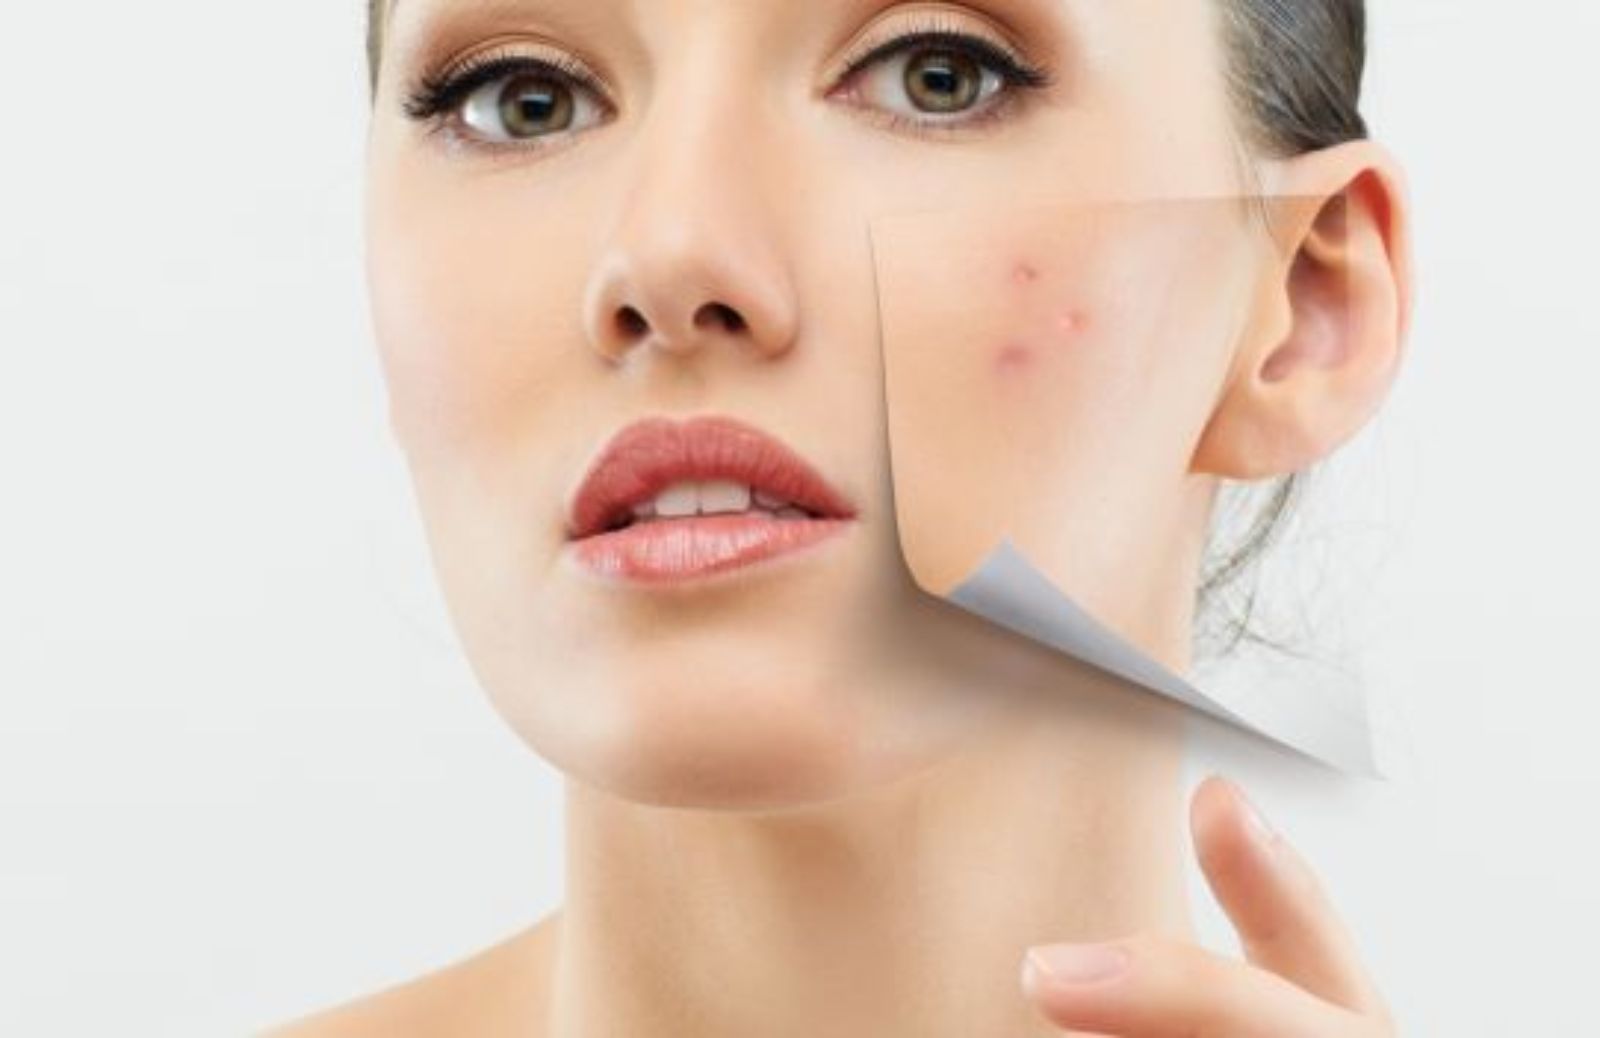 Come trattare le cicatrici da acne con i prodotti giusti